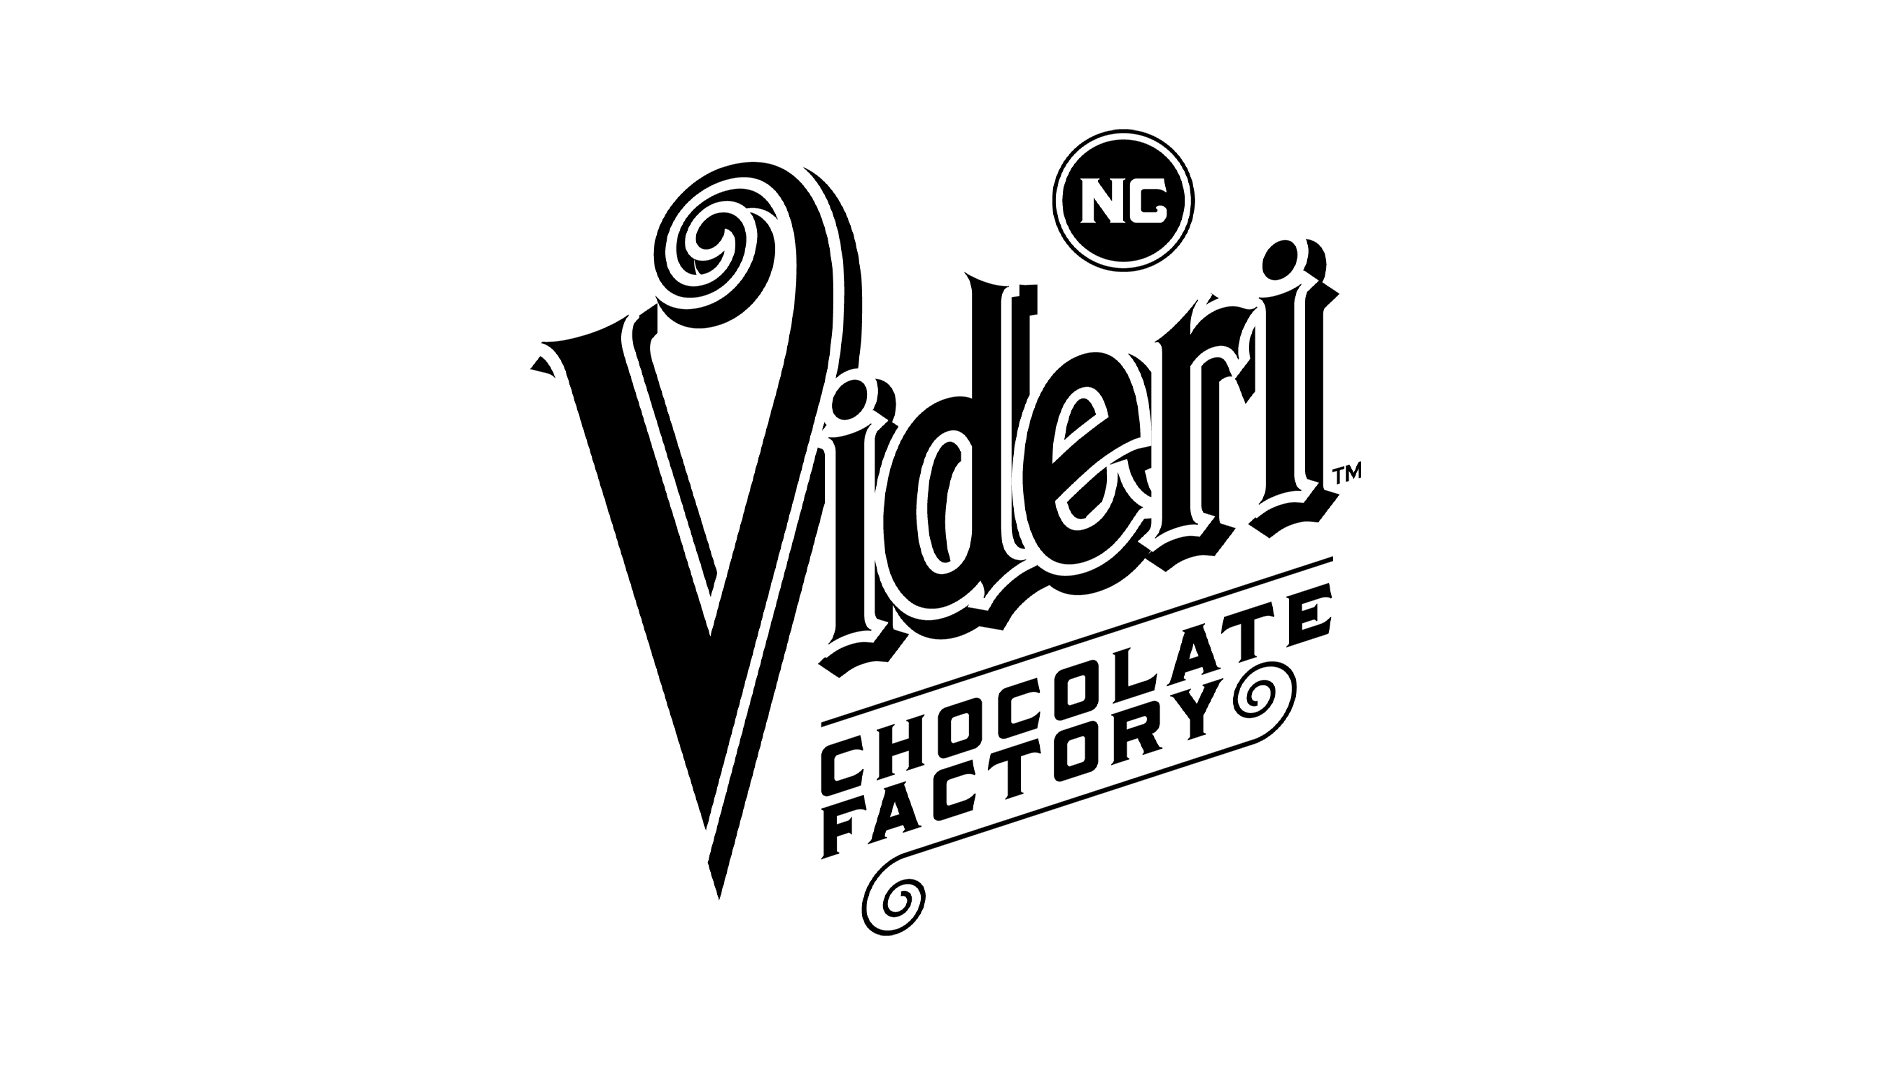 Industries-Logos-Videri.jpg